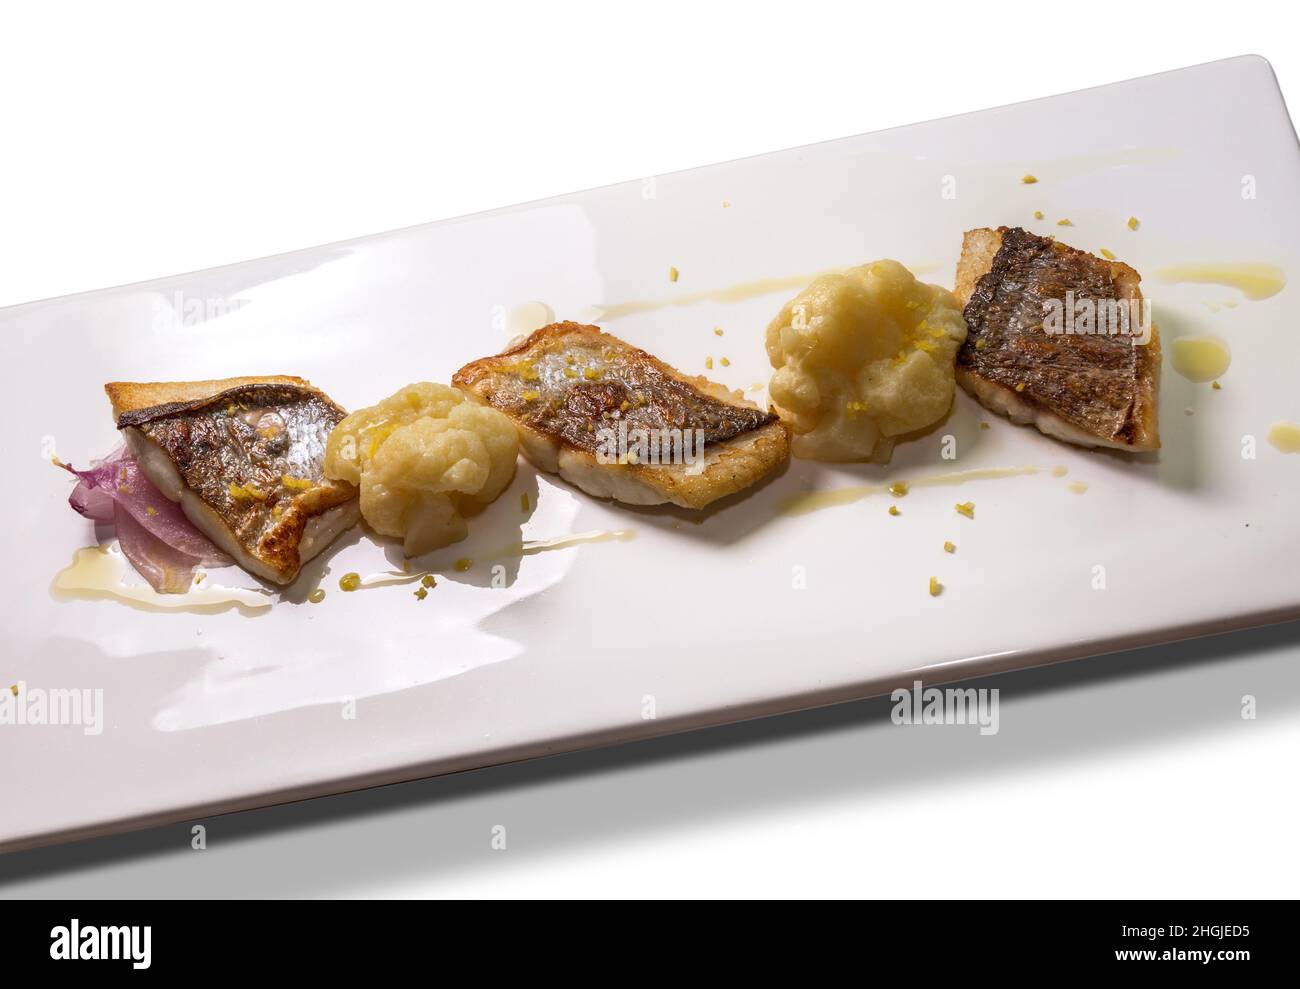 Filet de bar poêlé avec chou-fleur, oignon et zeste de citron râpé sur une assiette rectangulaire blanche Banque D'Images